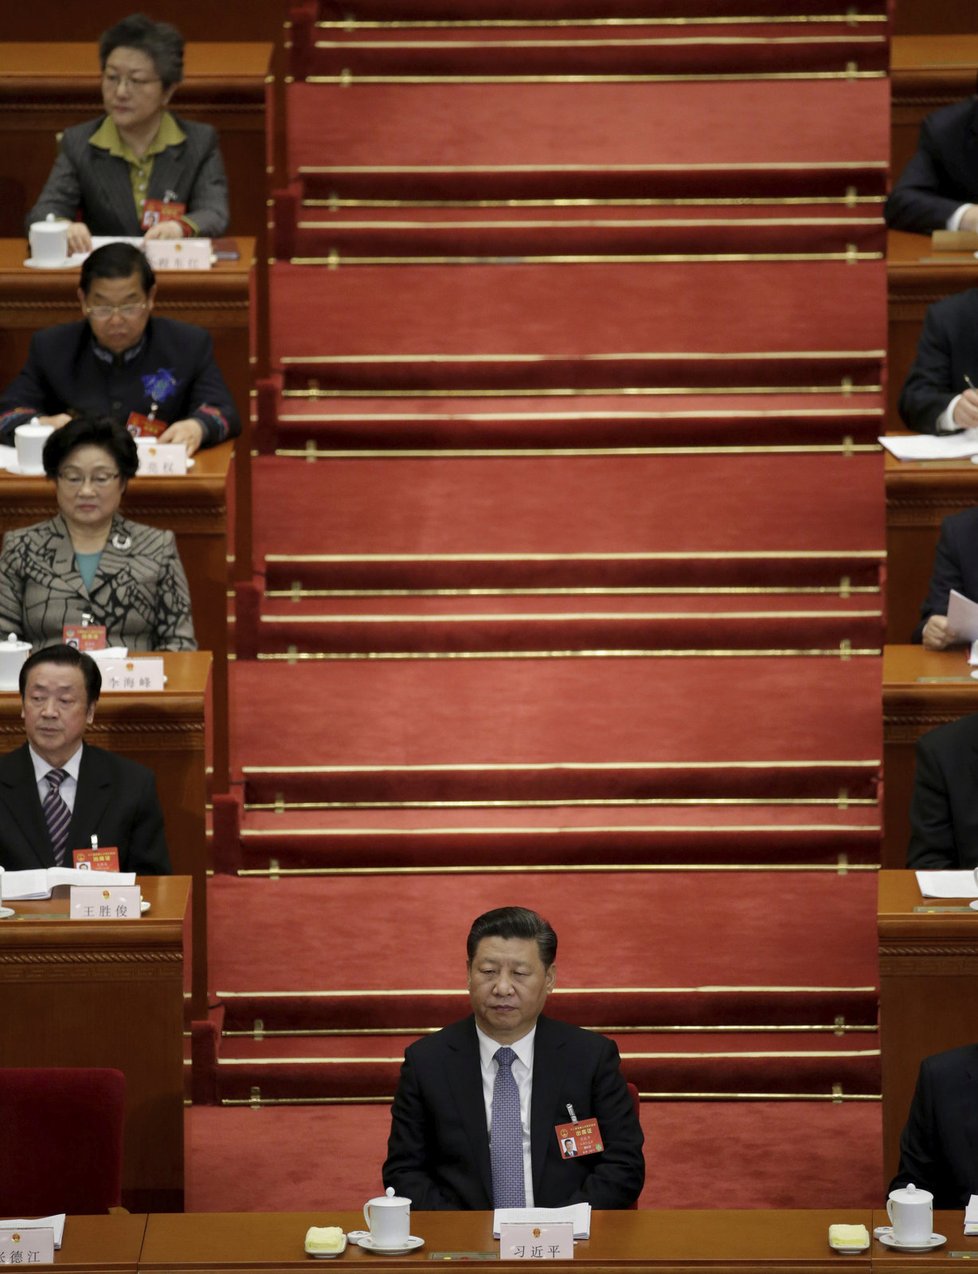 Zasedání čínského parlamentu v Pekingu